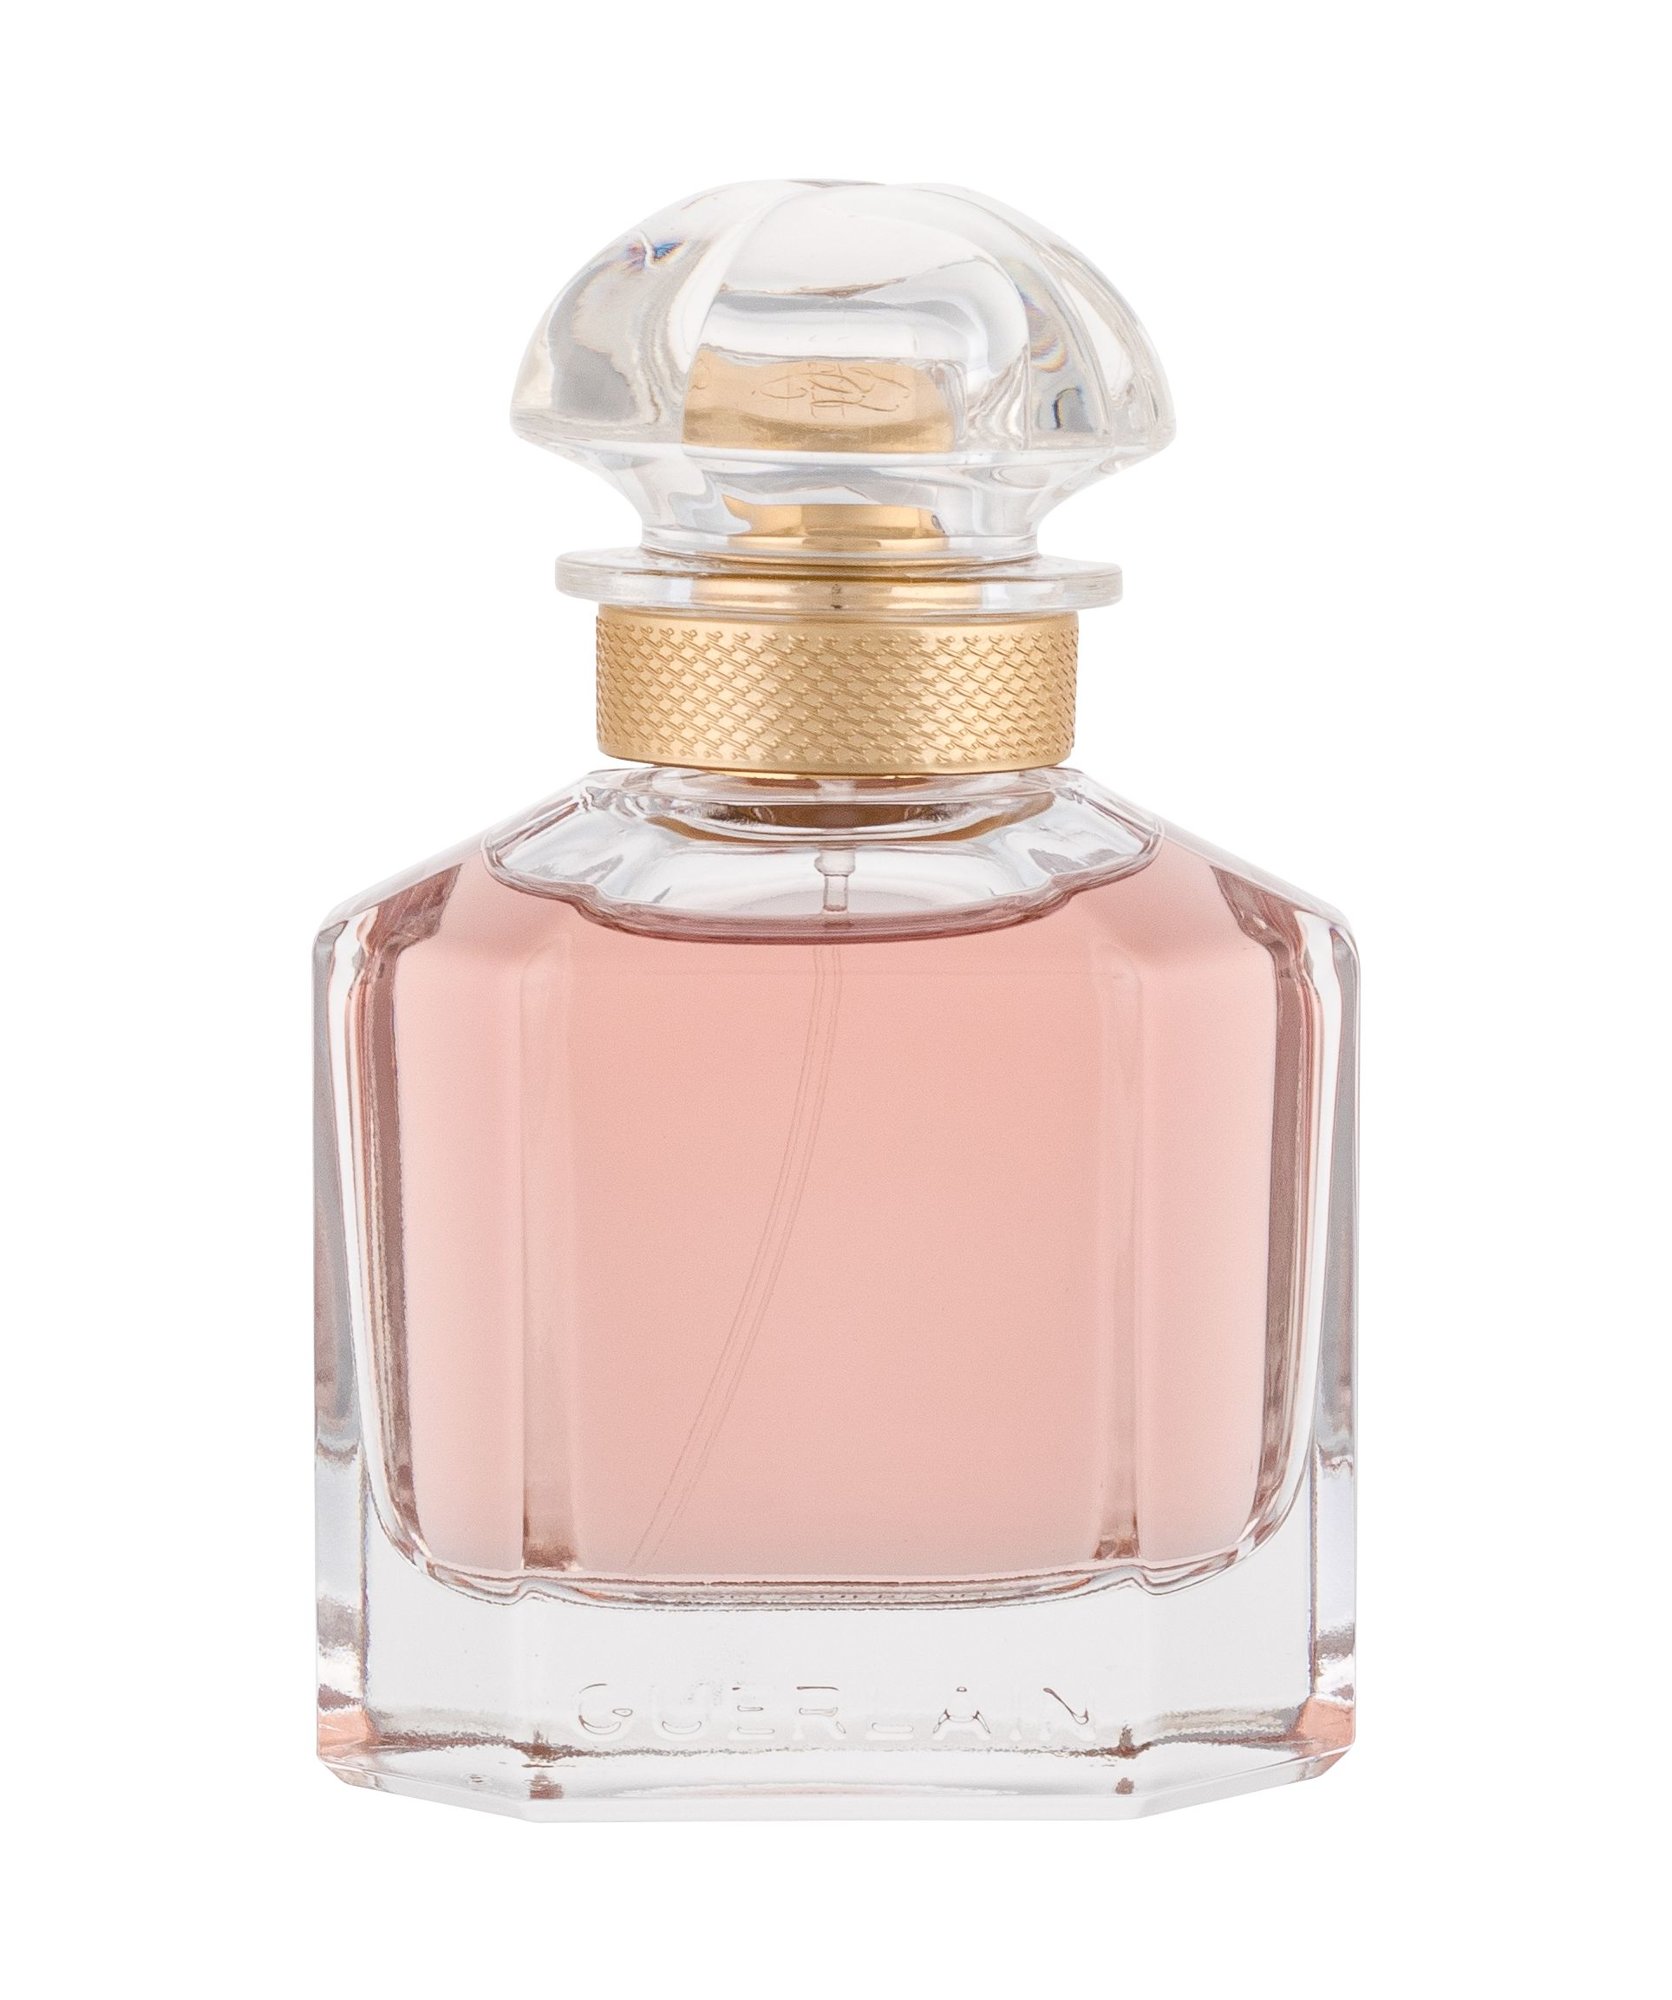 Guerlain Mon Guerlain Sensuelle, Parfumovaná voda 50ml